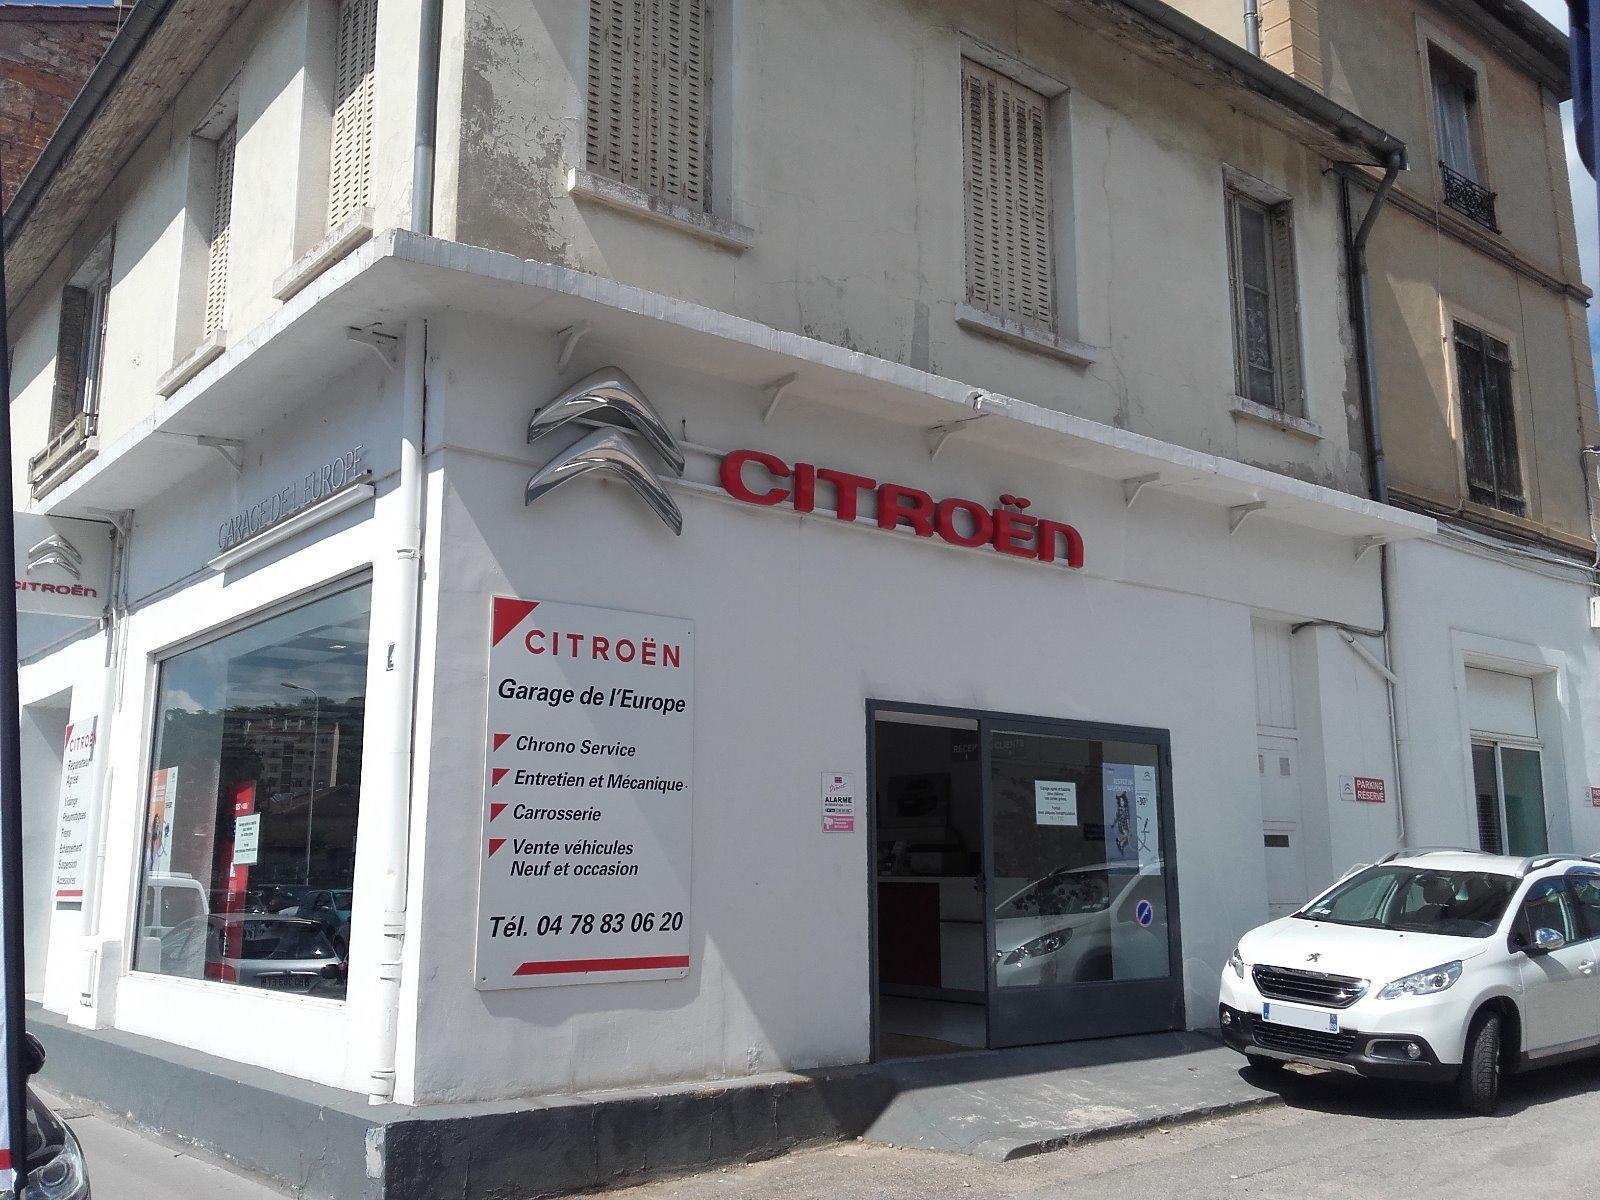 Agent Citroën